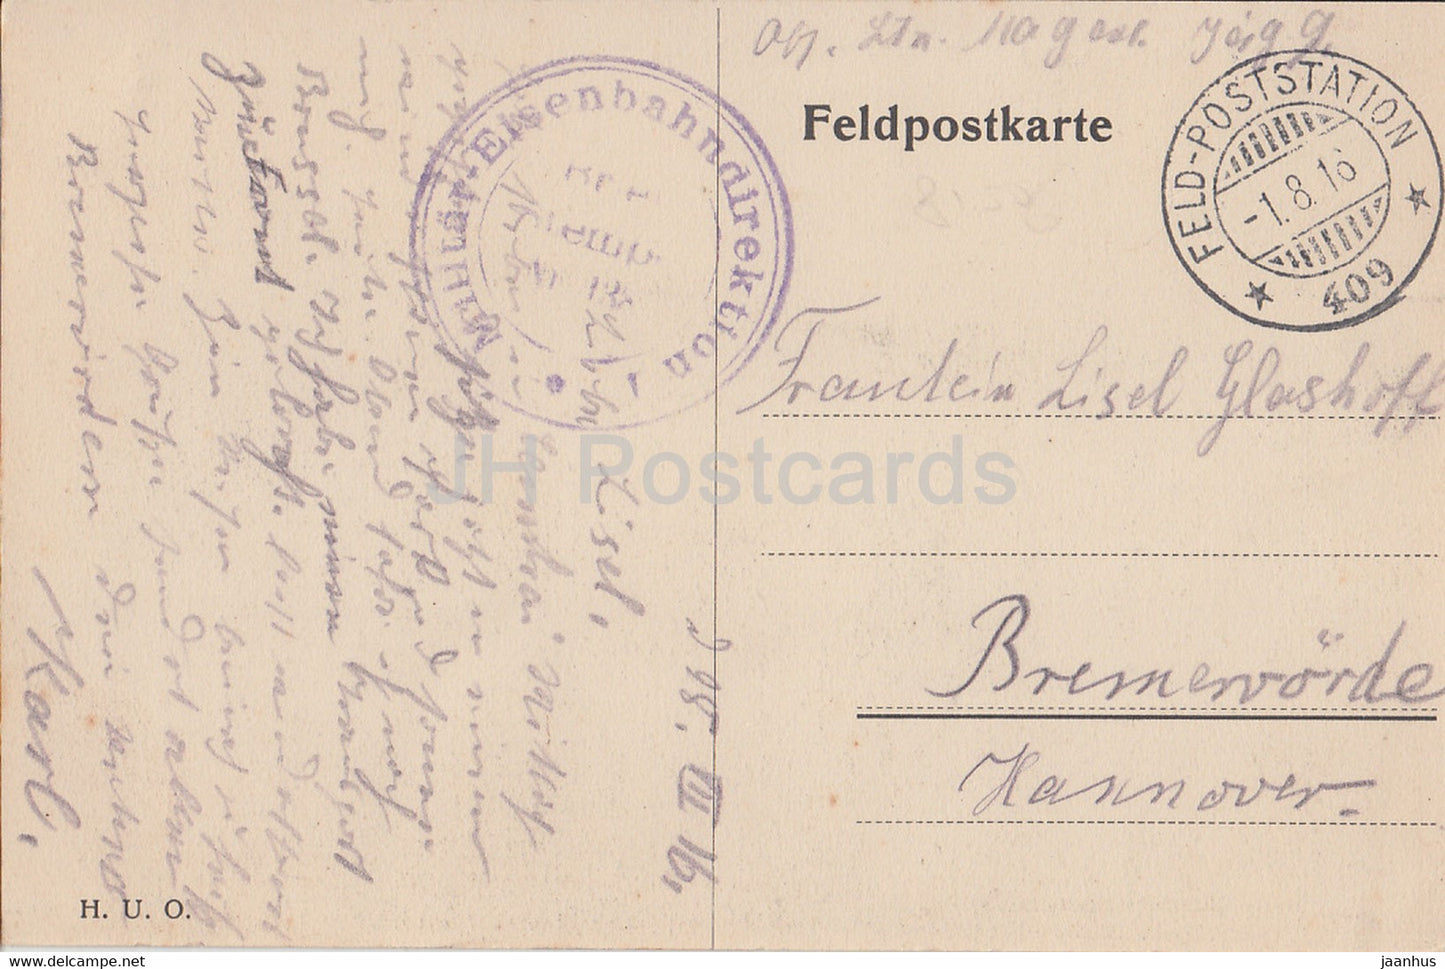 Cambrai - Pariser Tor mit Notre Dame Turm - carte postale ancienne - Feldpost - 1916 - France - utilisé